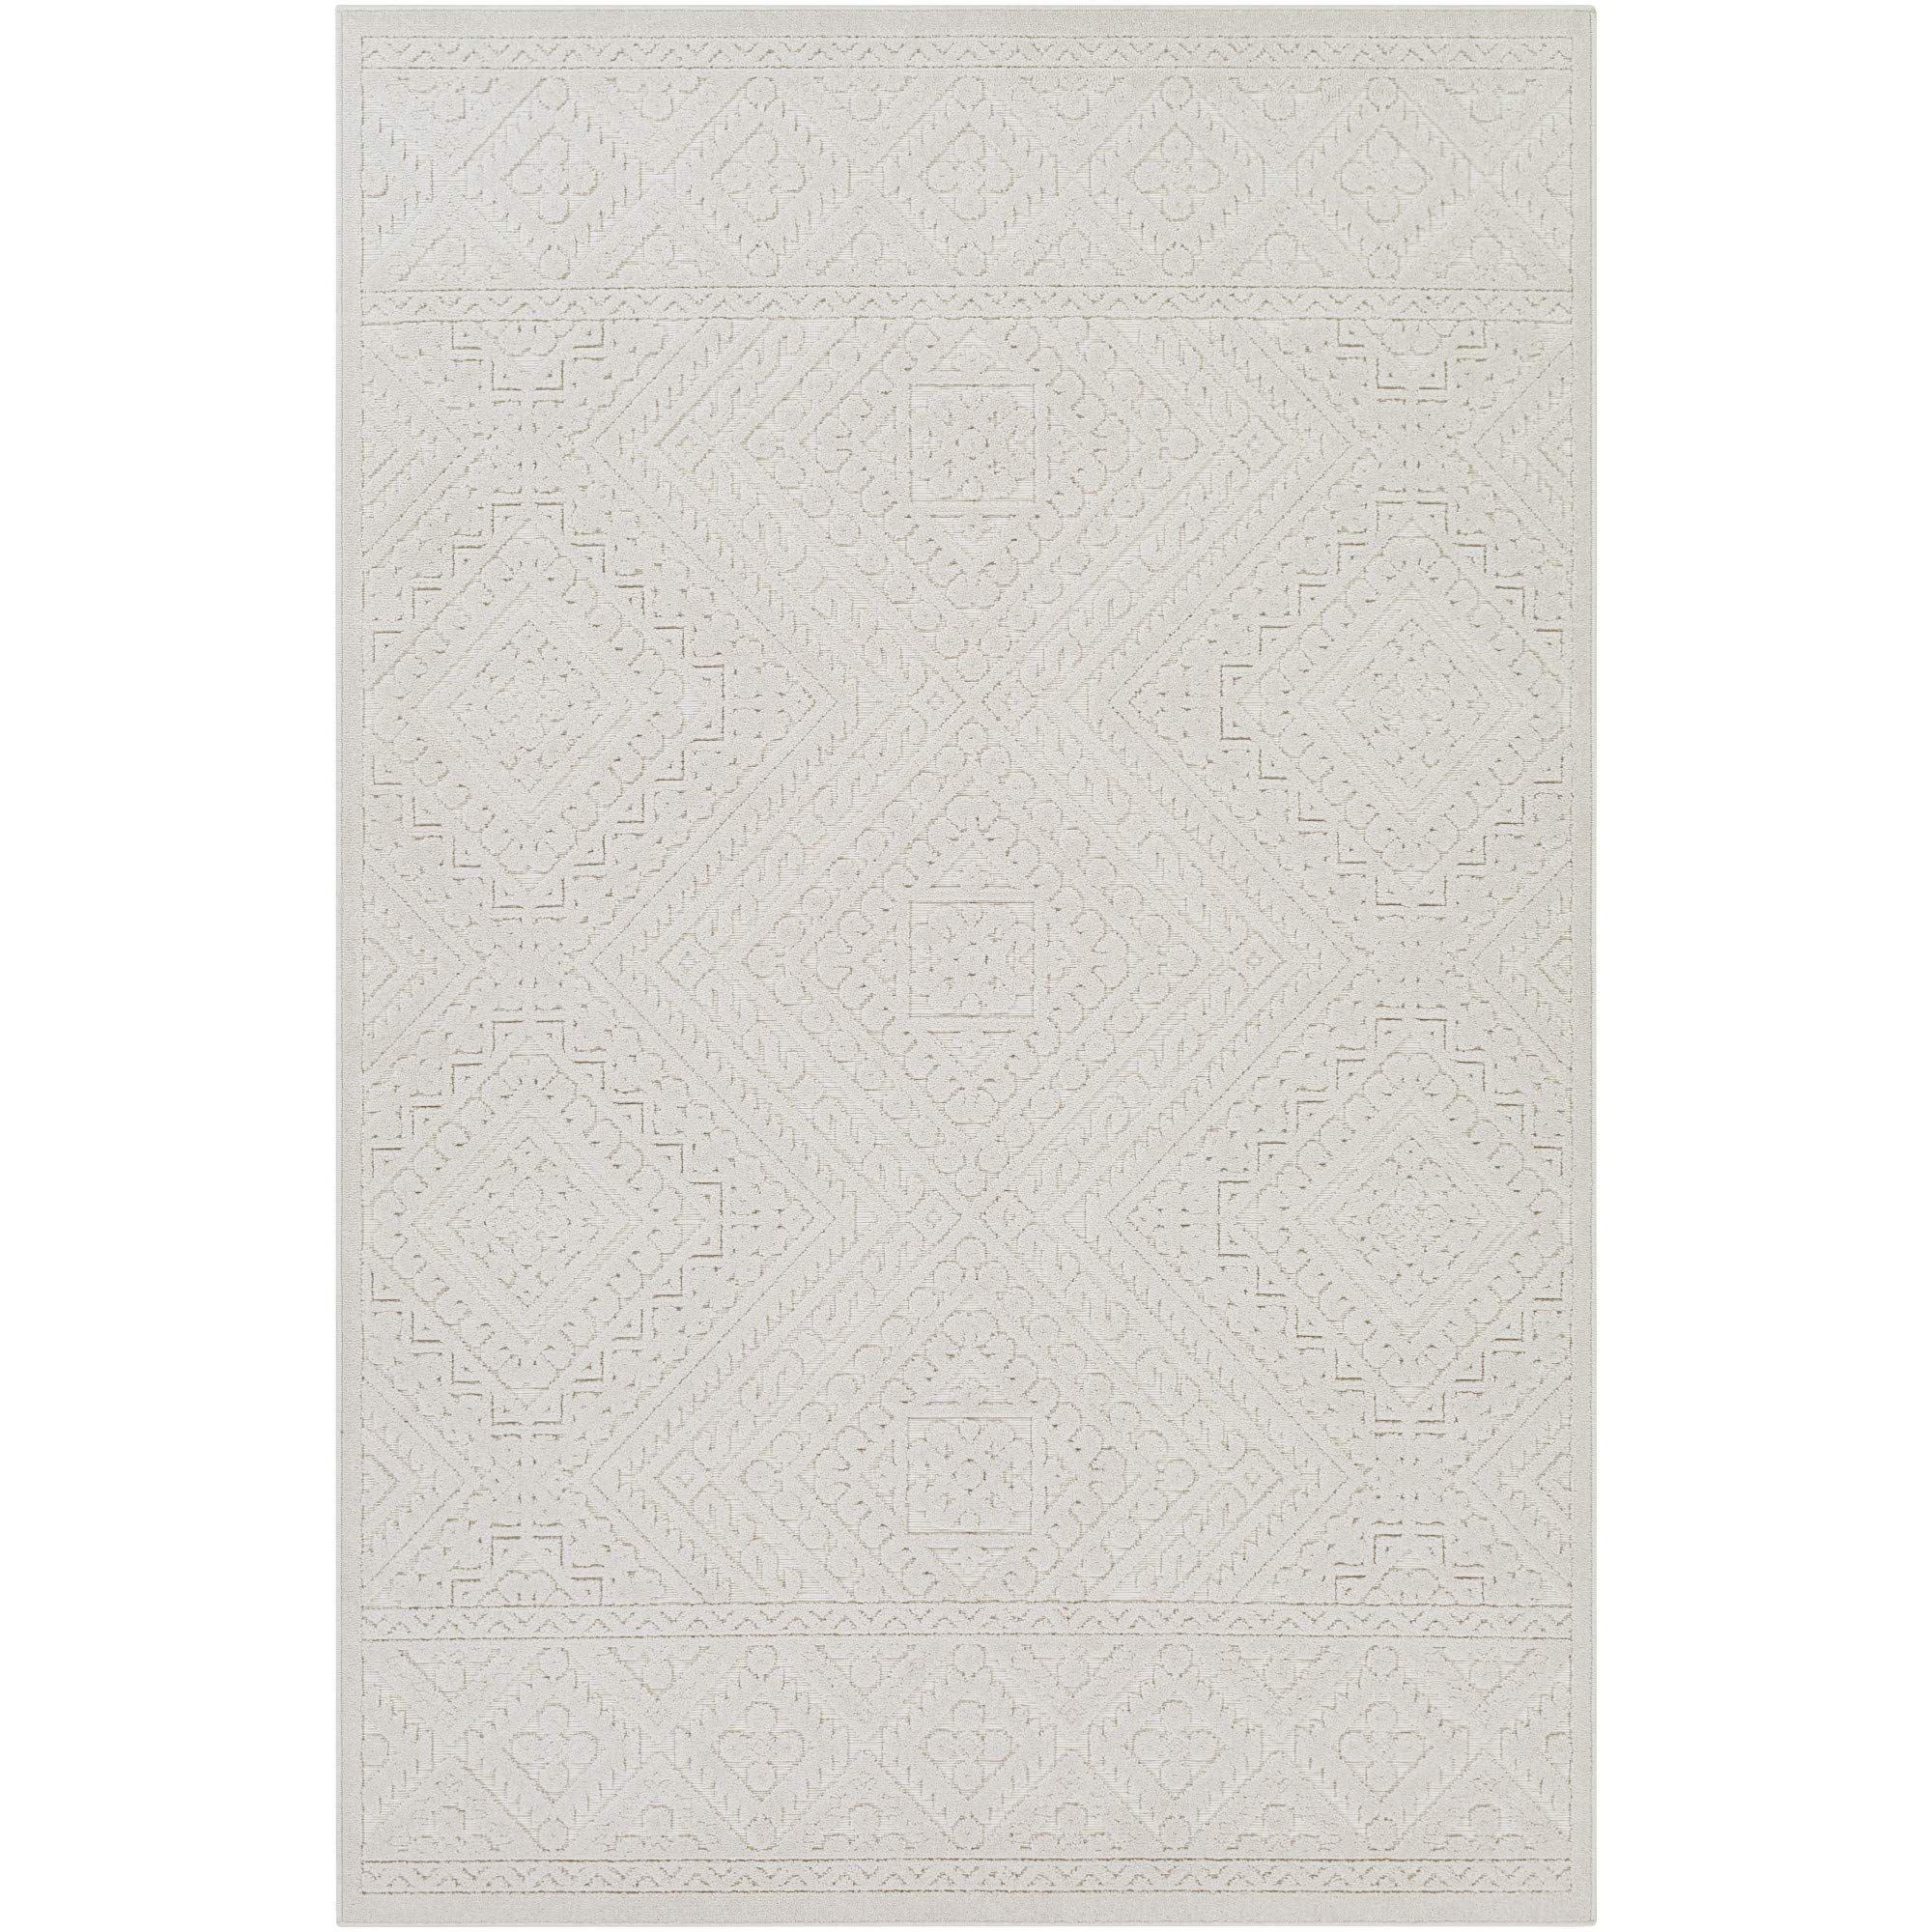 Artistic Weavers Ivor Outdoor Textured Area Rug, 7'10" x 10', Cream | Amazon (US)